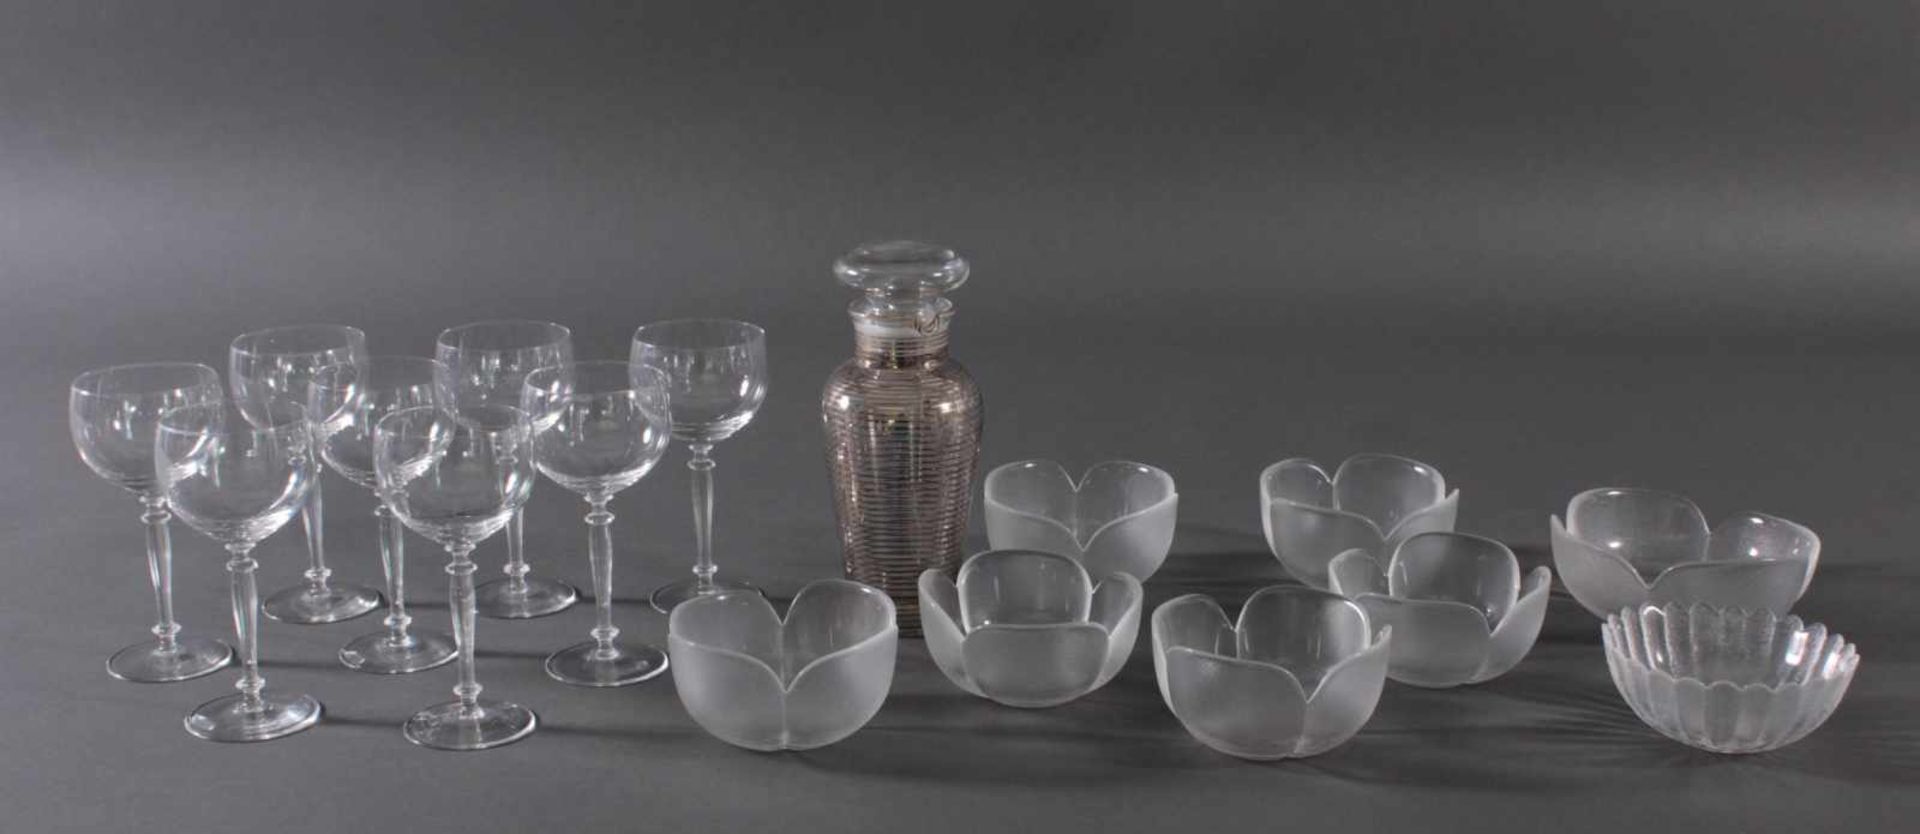 17 Teile unterschiedliche GläserFarbloses Glas. 8 Rosenthal-Obstschalen, dickwandig mattiertes Glas,